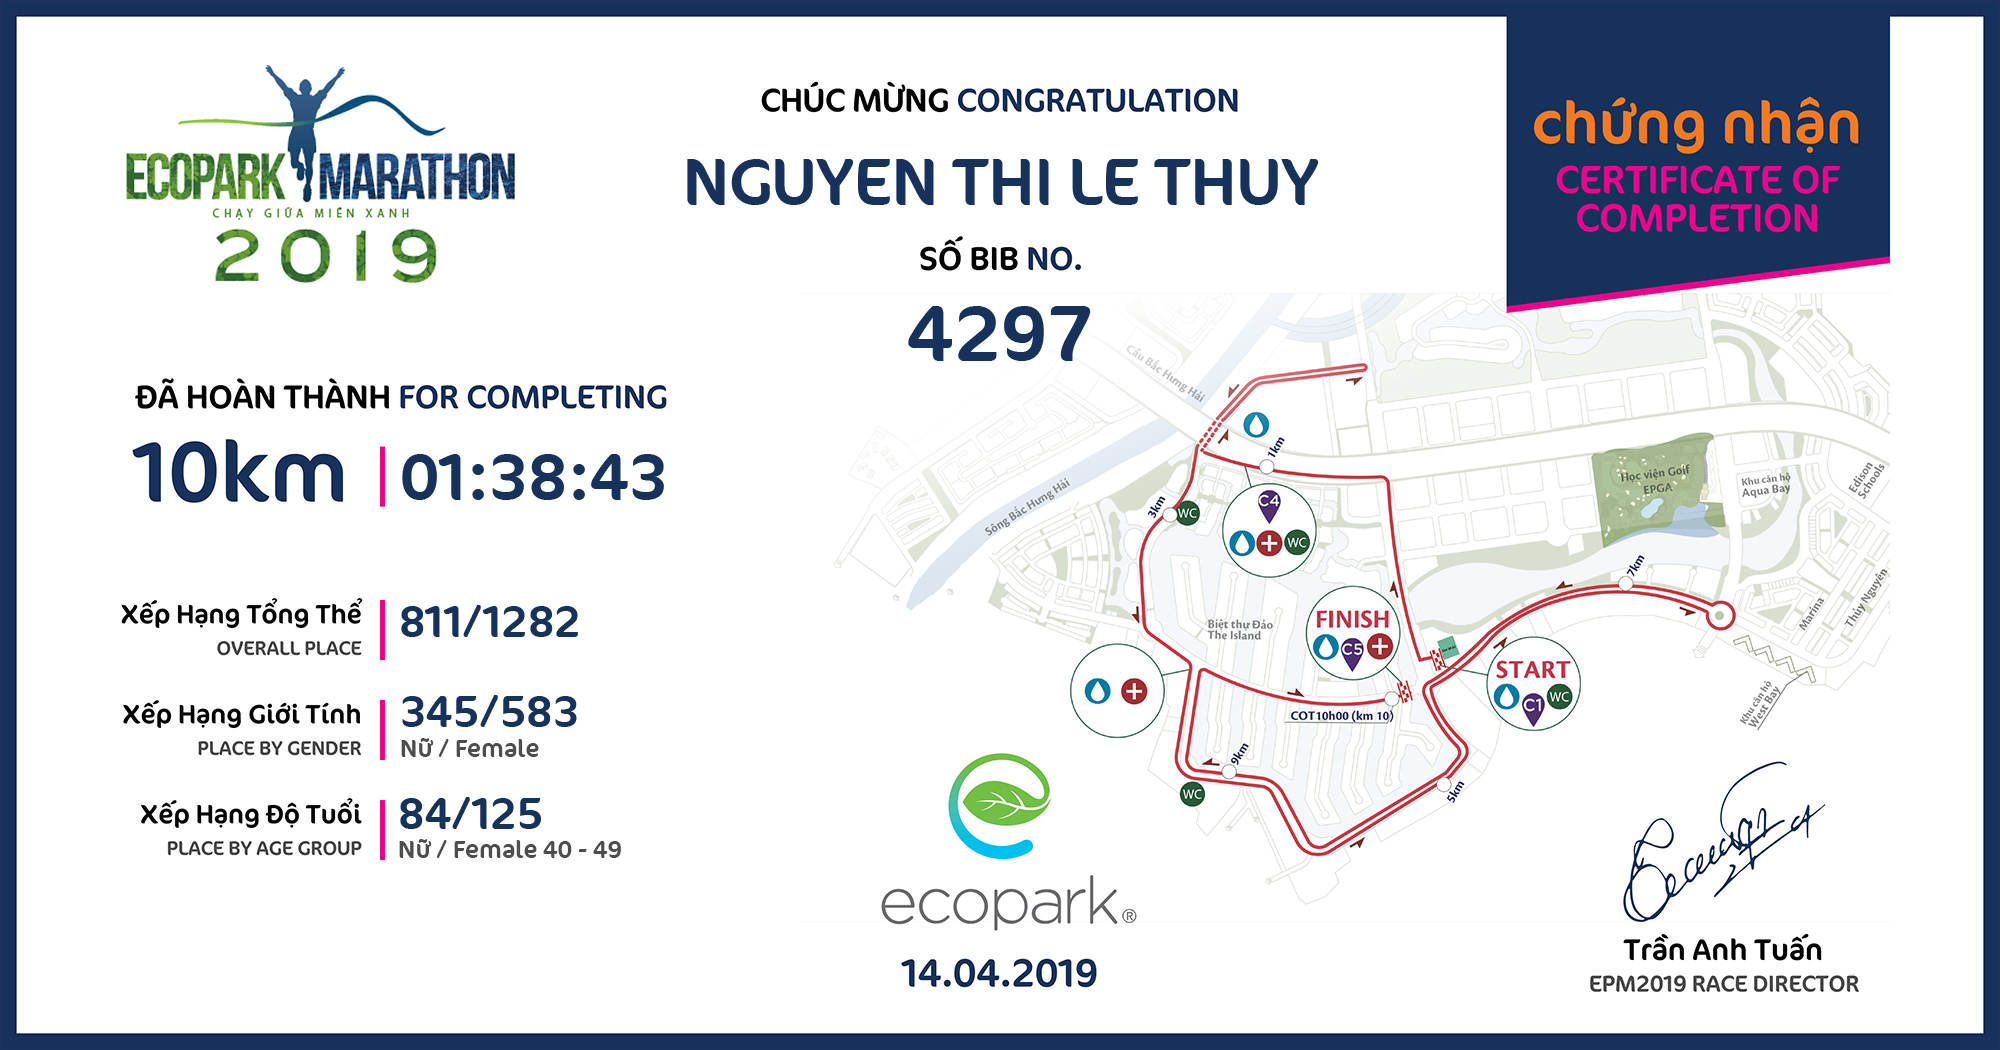 4297 - Nguyen Thi Le Thuy